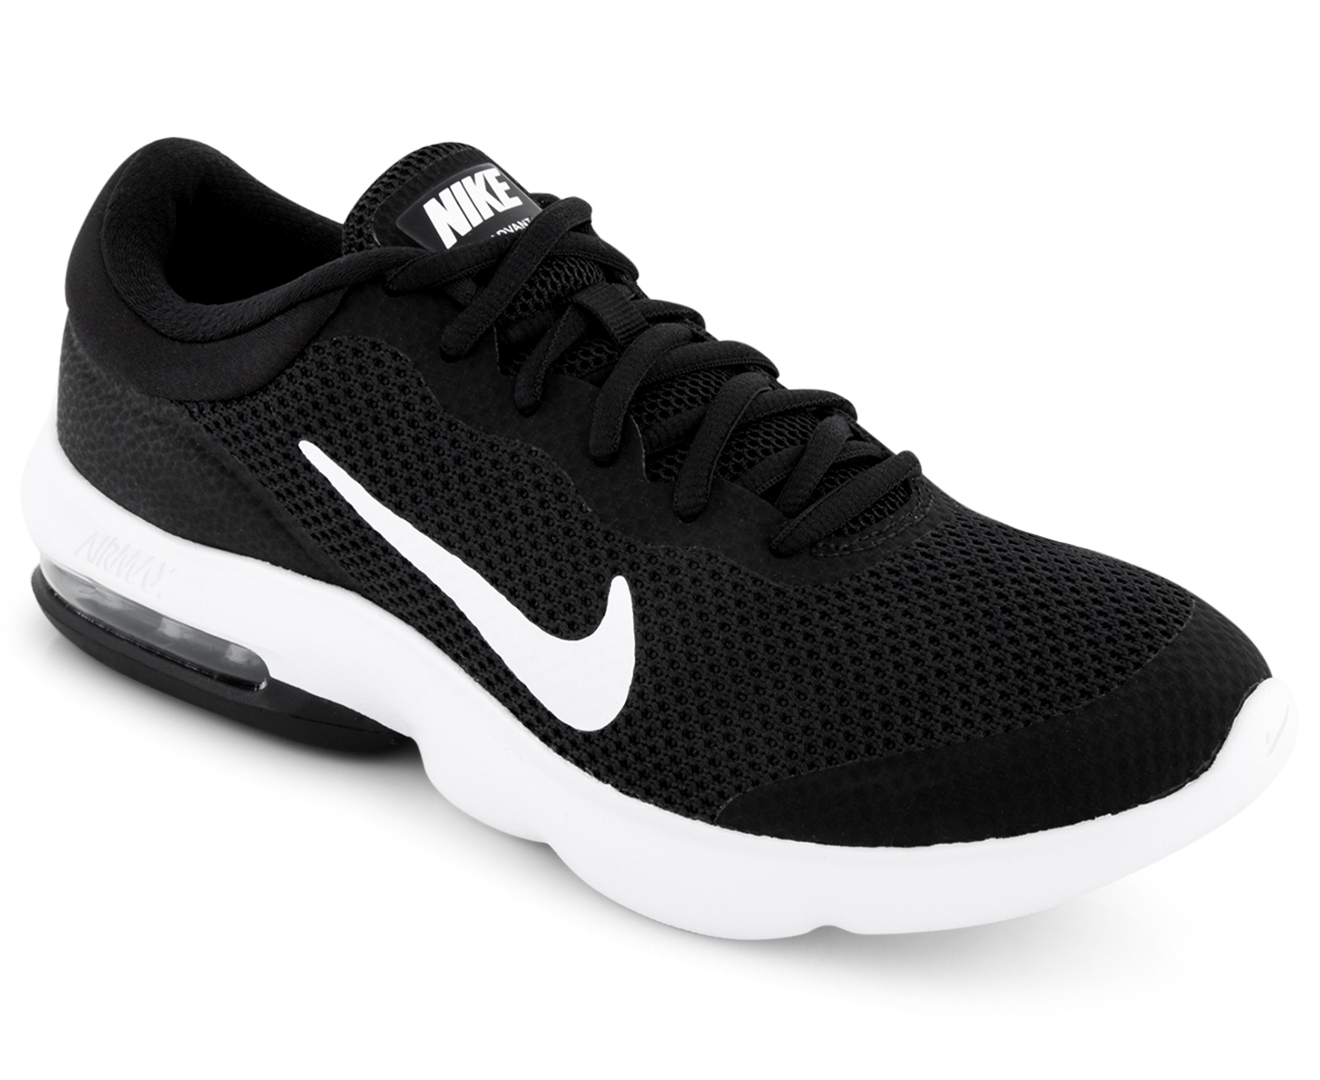 Nike Women's Air Max Advantage Shoe - Black/White | Catch.co.nz